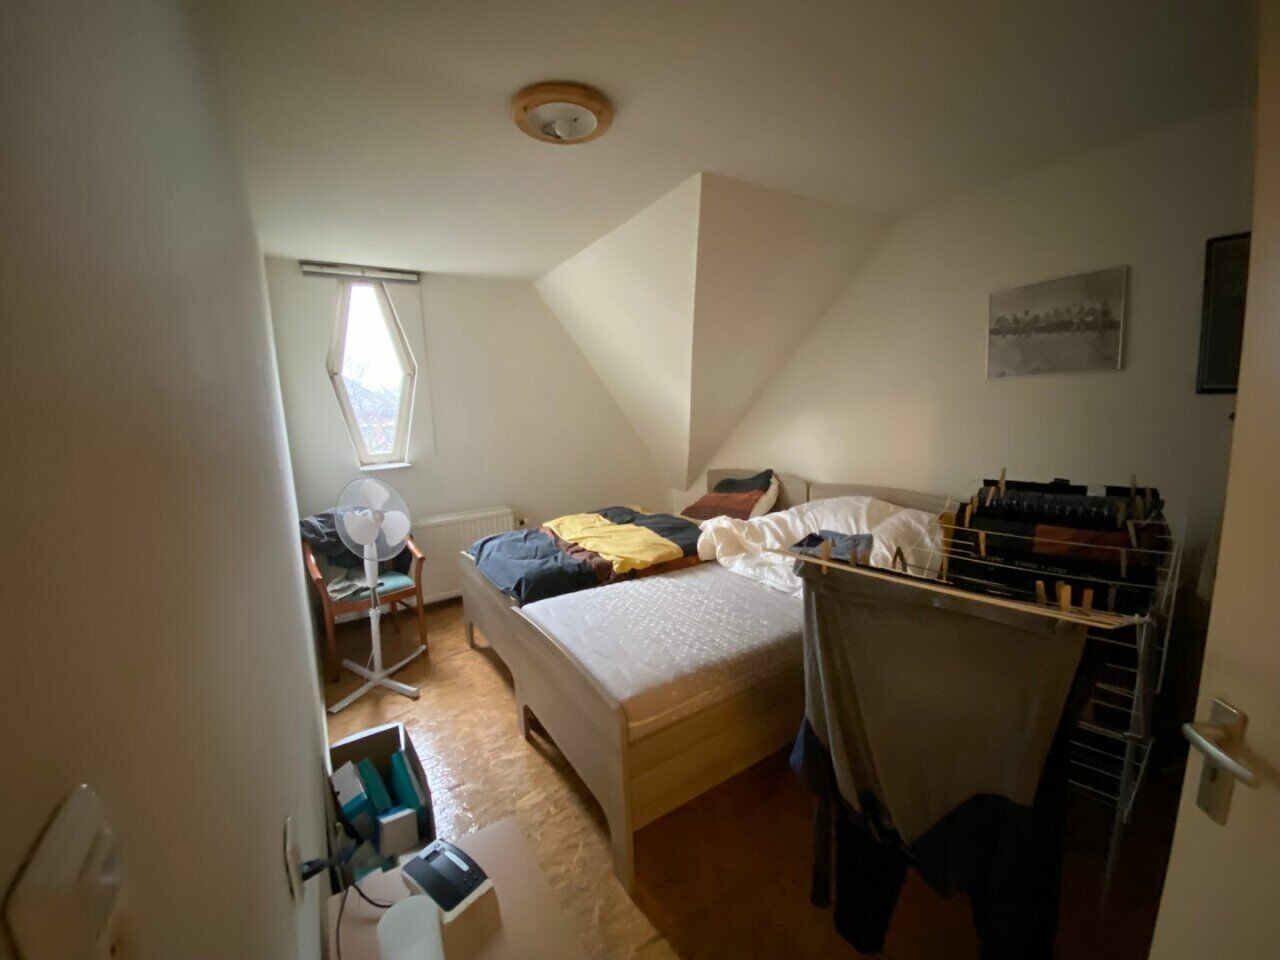 Woning / appartement - Hoensbroek - Nieuwstraat 64 - 64A - 66